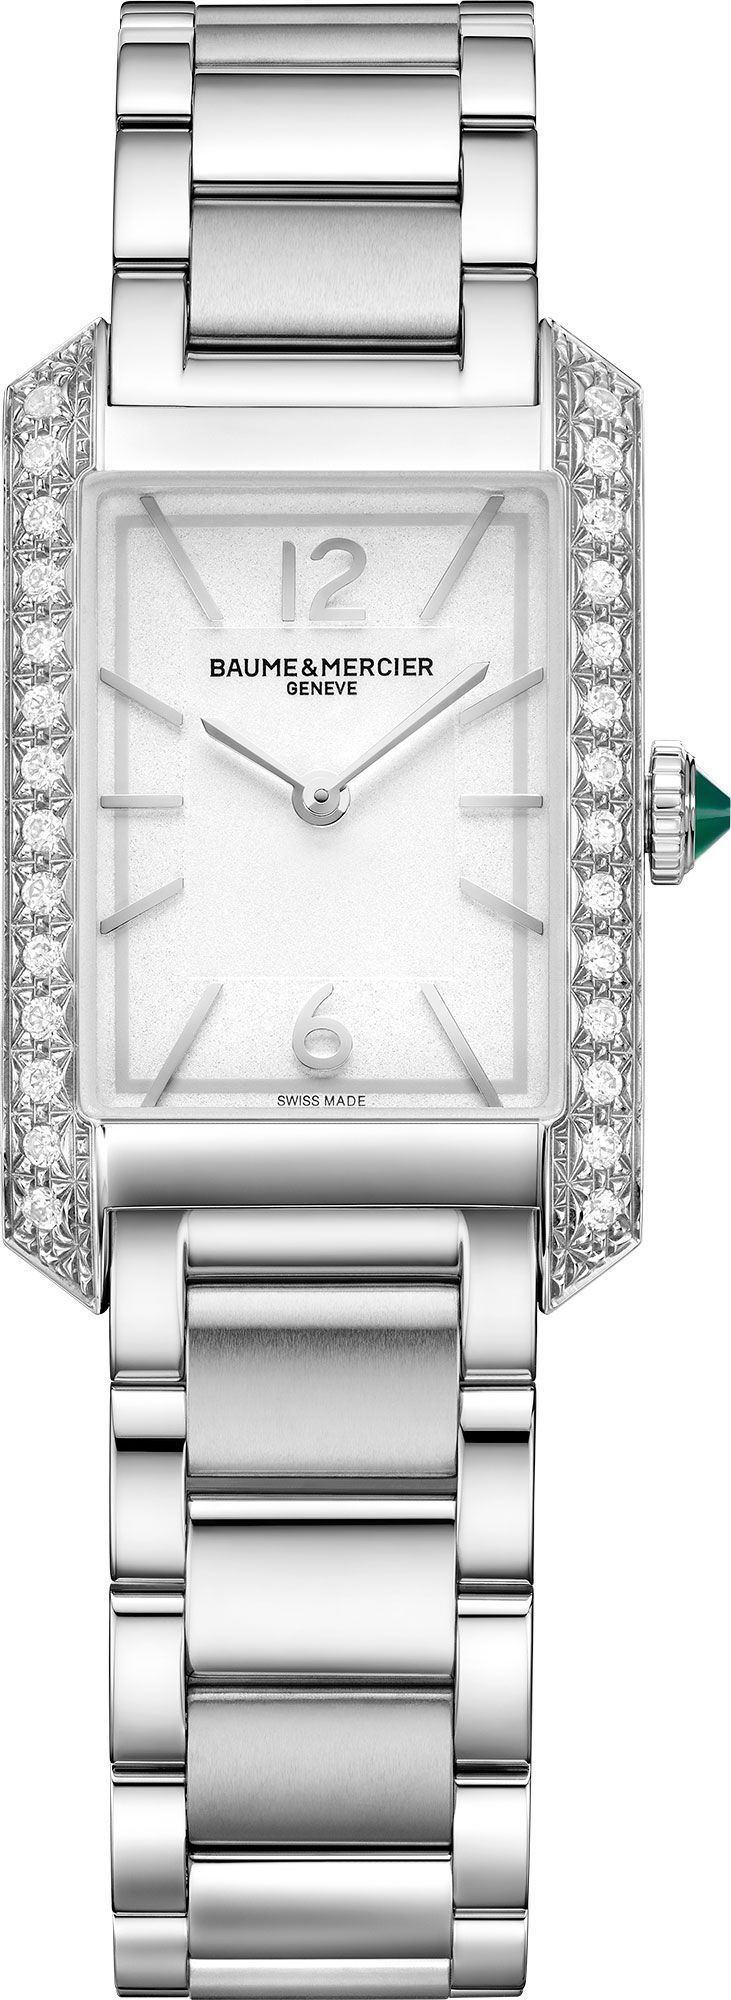 Baume & Mercier  22 mm Watch in Silver Dial For Women - 1